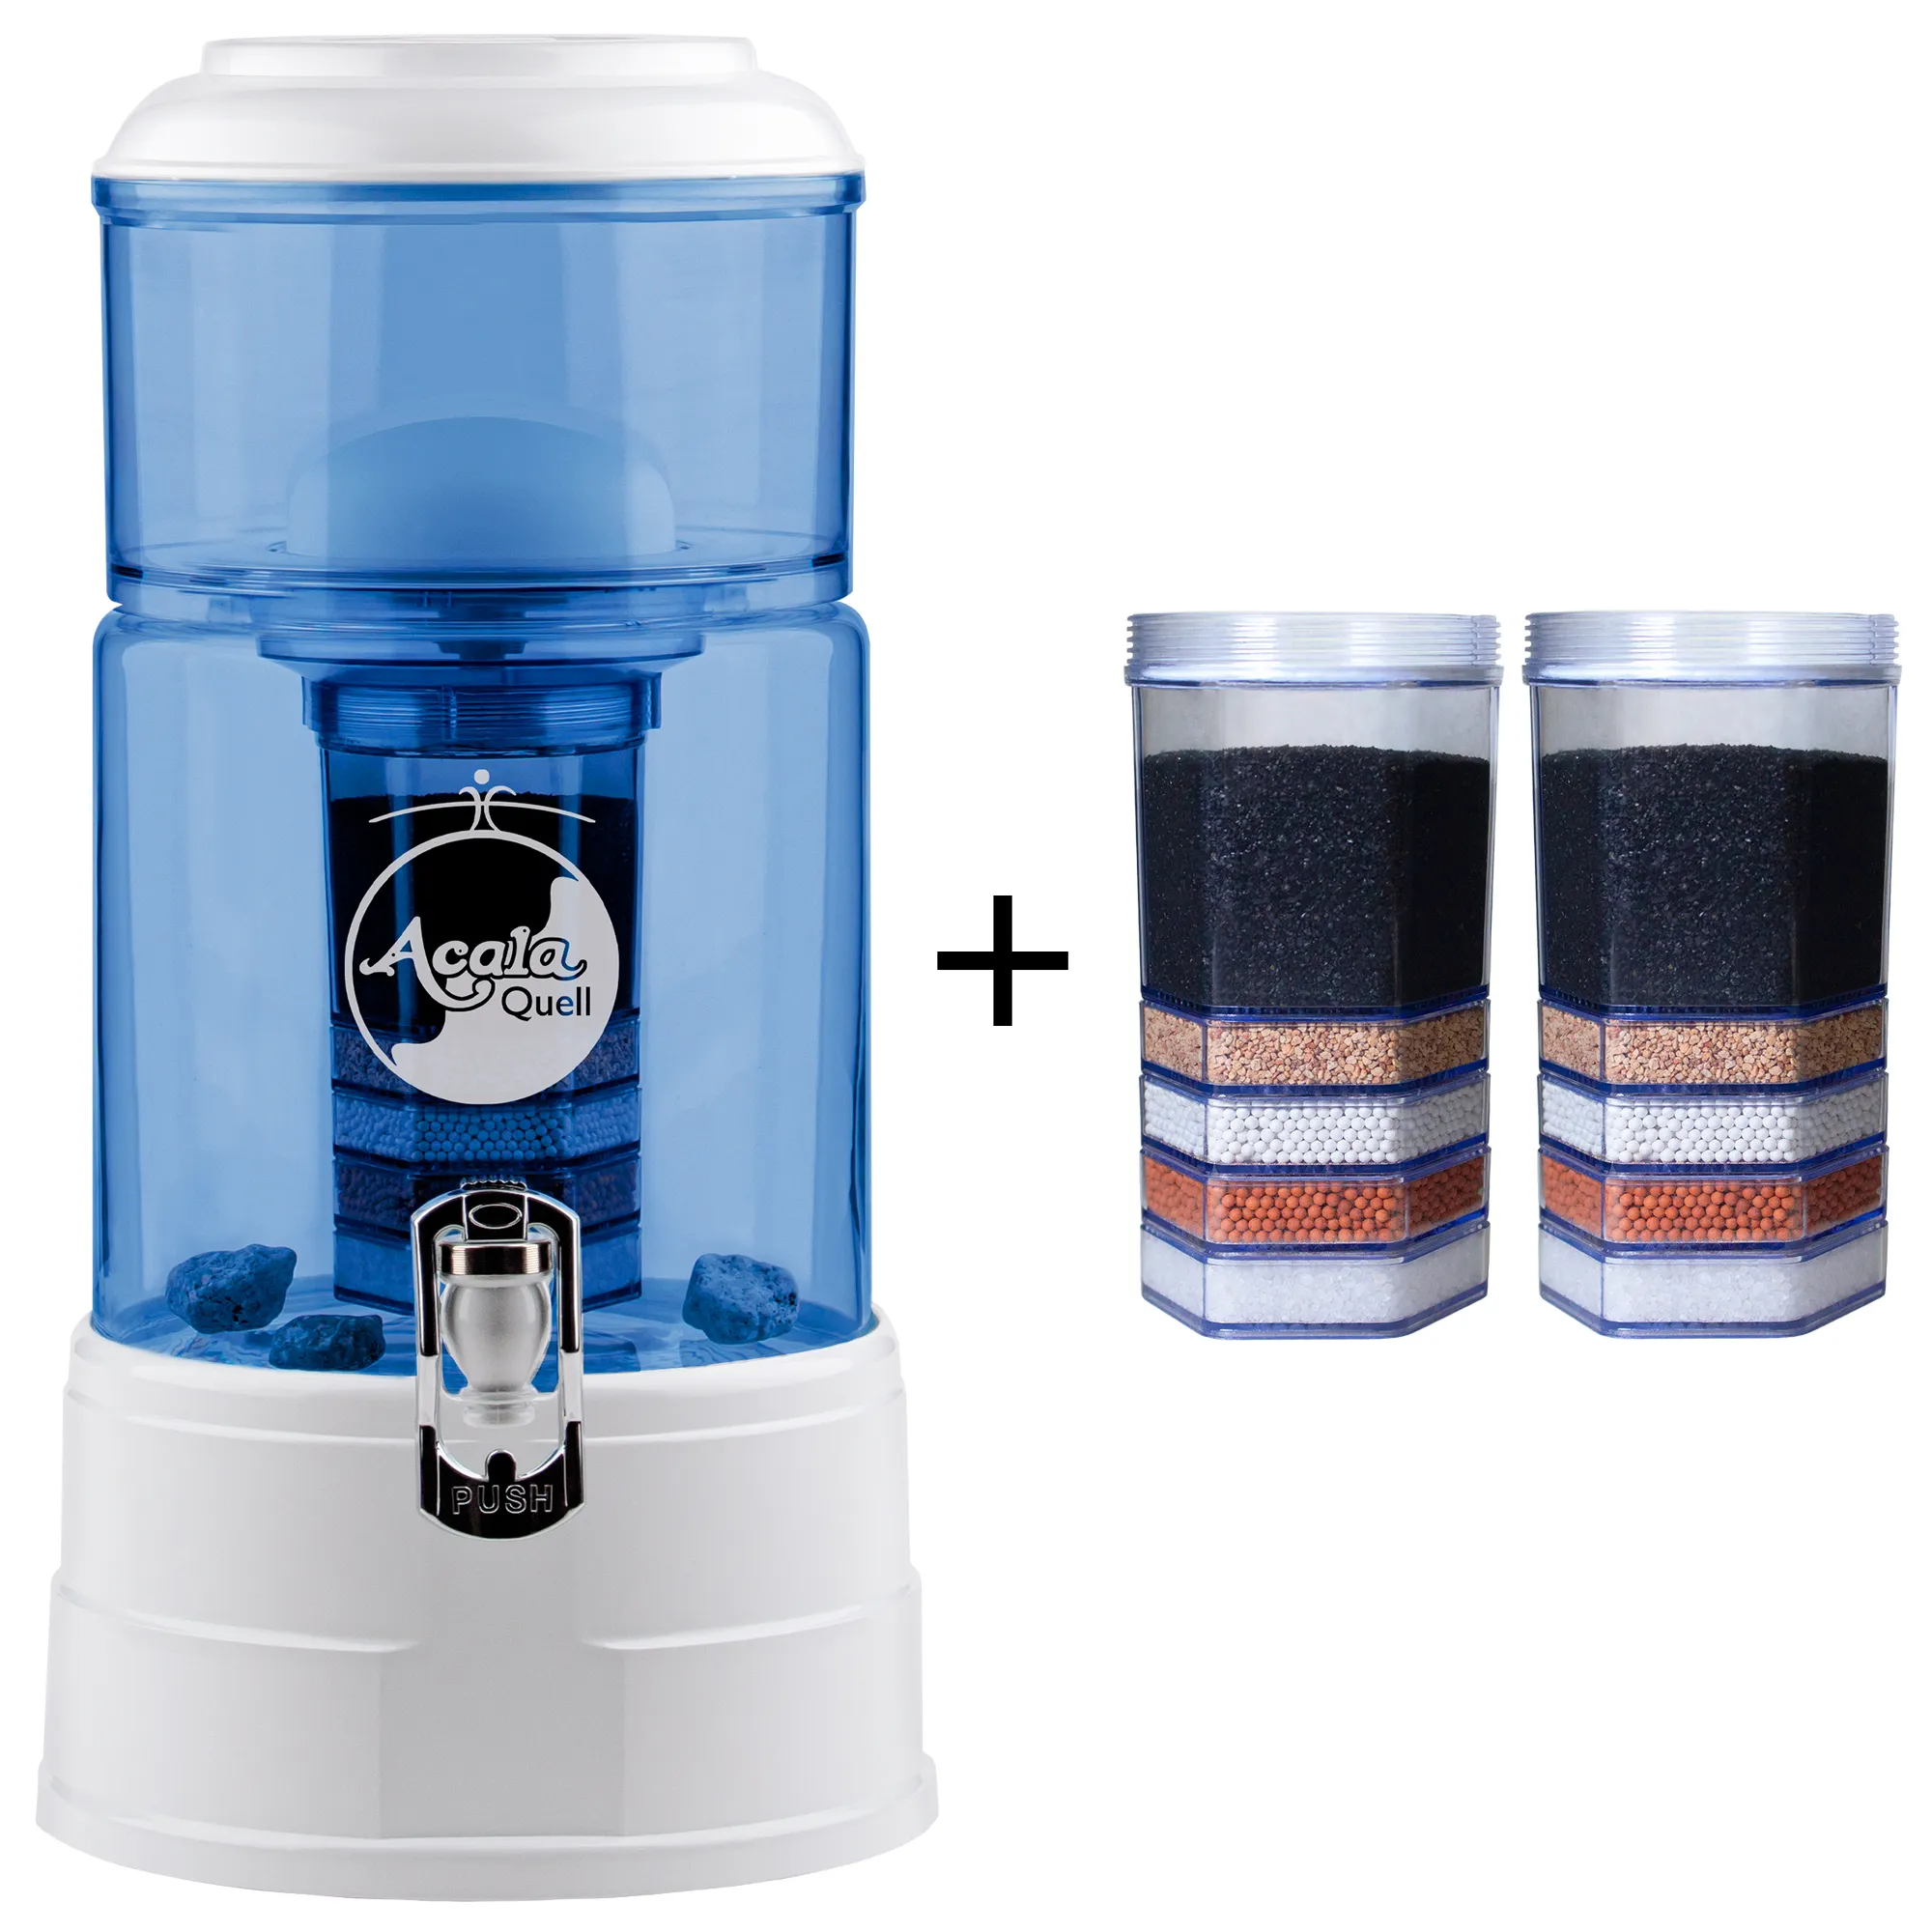 Zu sehen ist der Acala Wasserfilter Mini in blau-weiß inklusive einer Filterkartusche und einem Keramikfilter. Zusätzlich sieht man zwei Filterkartuschen. Das Bild zeigt das Einsteigerpaket für ein Jahr.